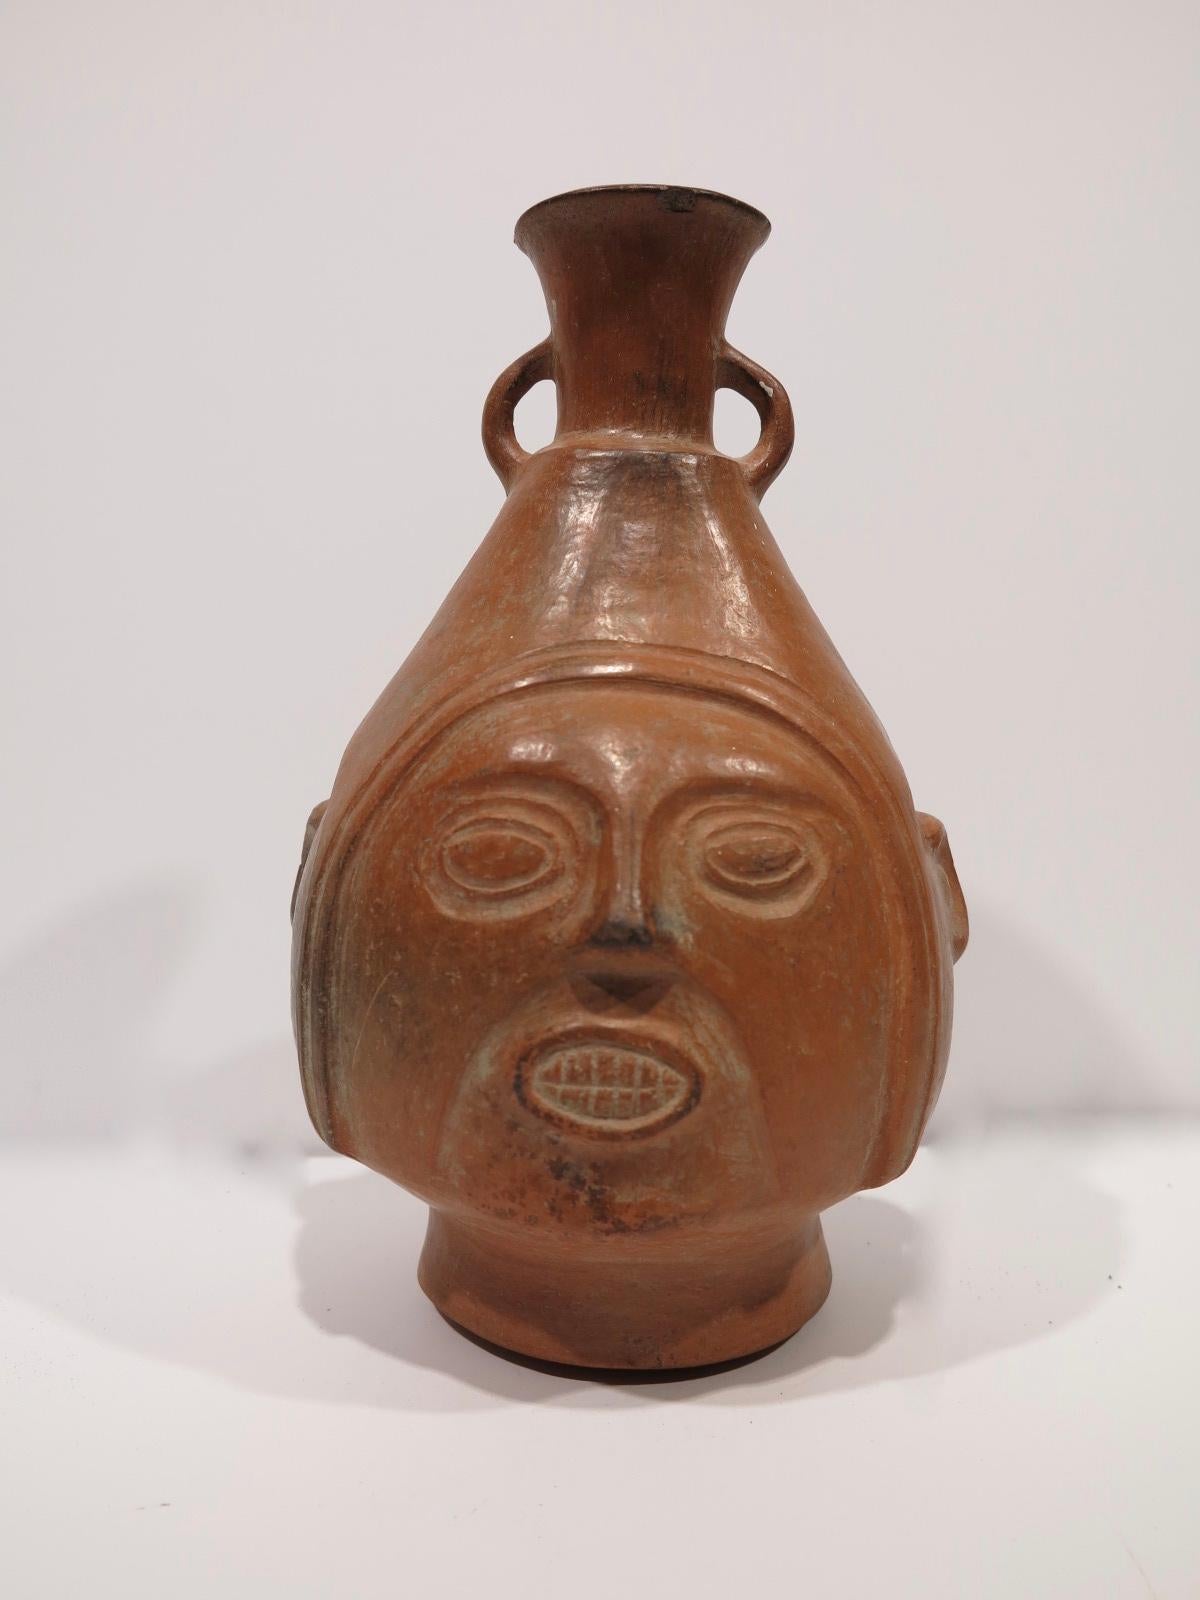 Chimu c.1100 Peruvian terra-cotta portrait face vase vessel Peru - Art by Unknown